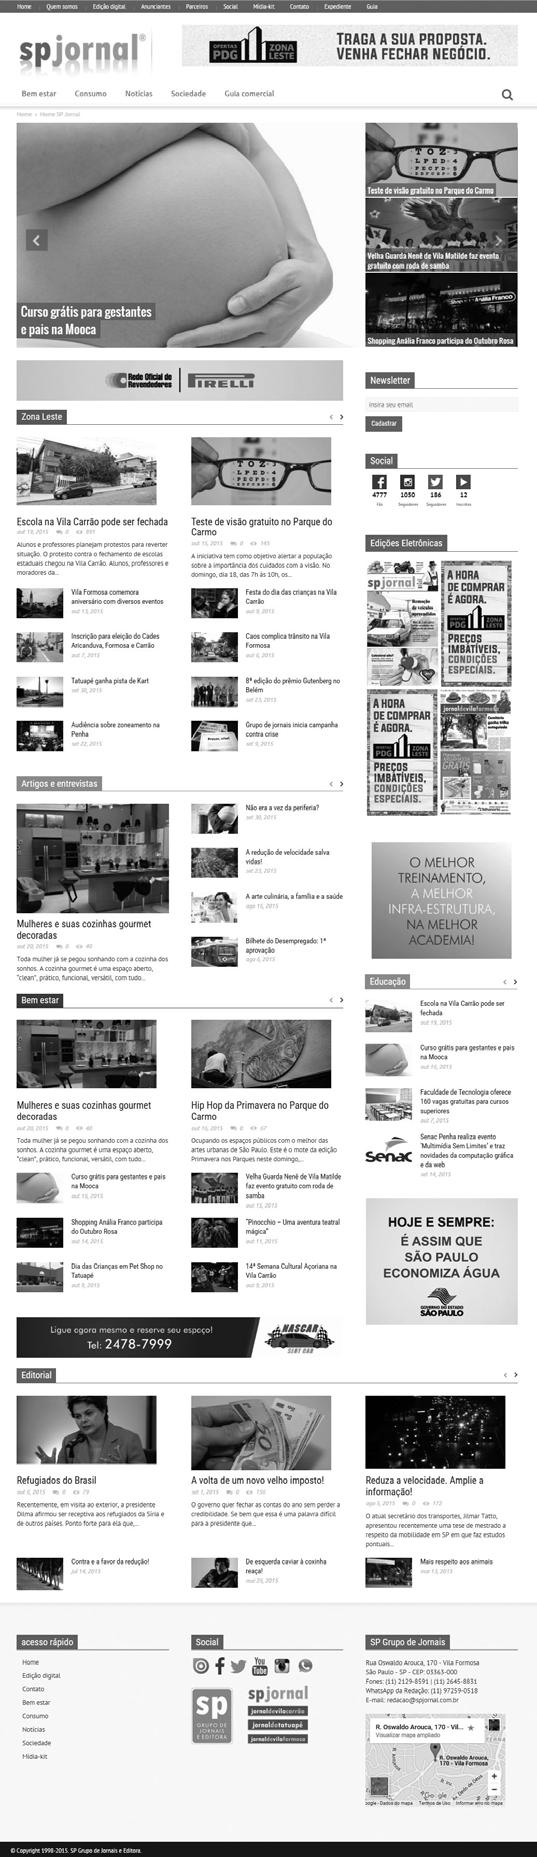 FORMATOS Portal spjornal BANNER SUPERIOR Exibido em todas as páginas Tamanho: 728 X 90 pixels Arquivo: flash, vídeo, jpeg e gif.